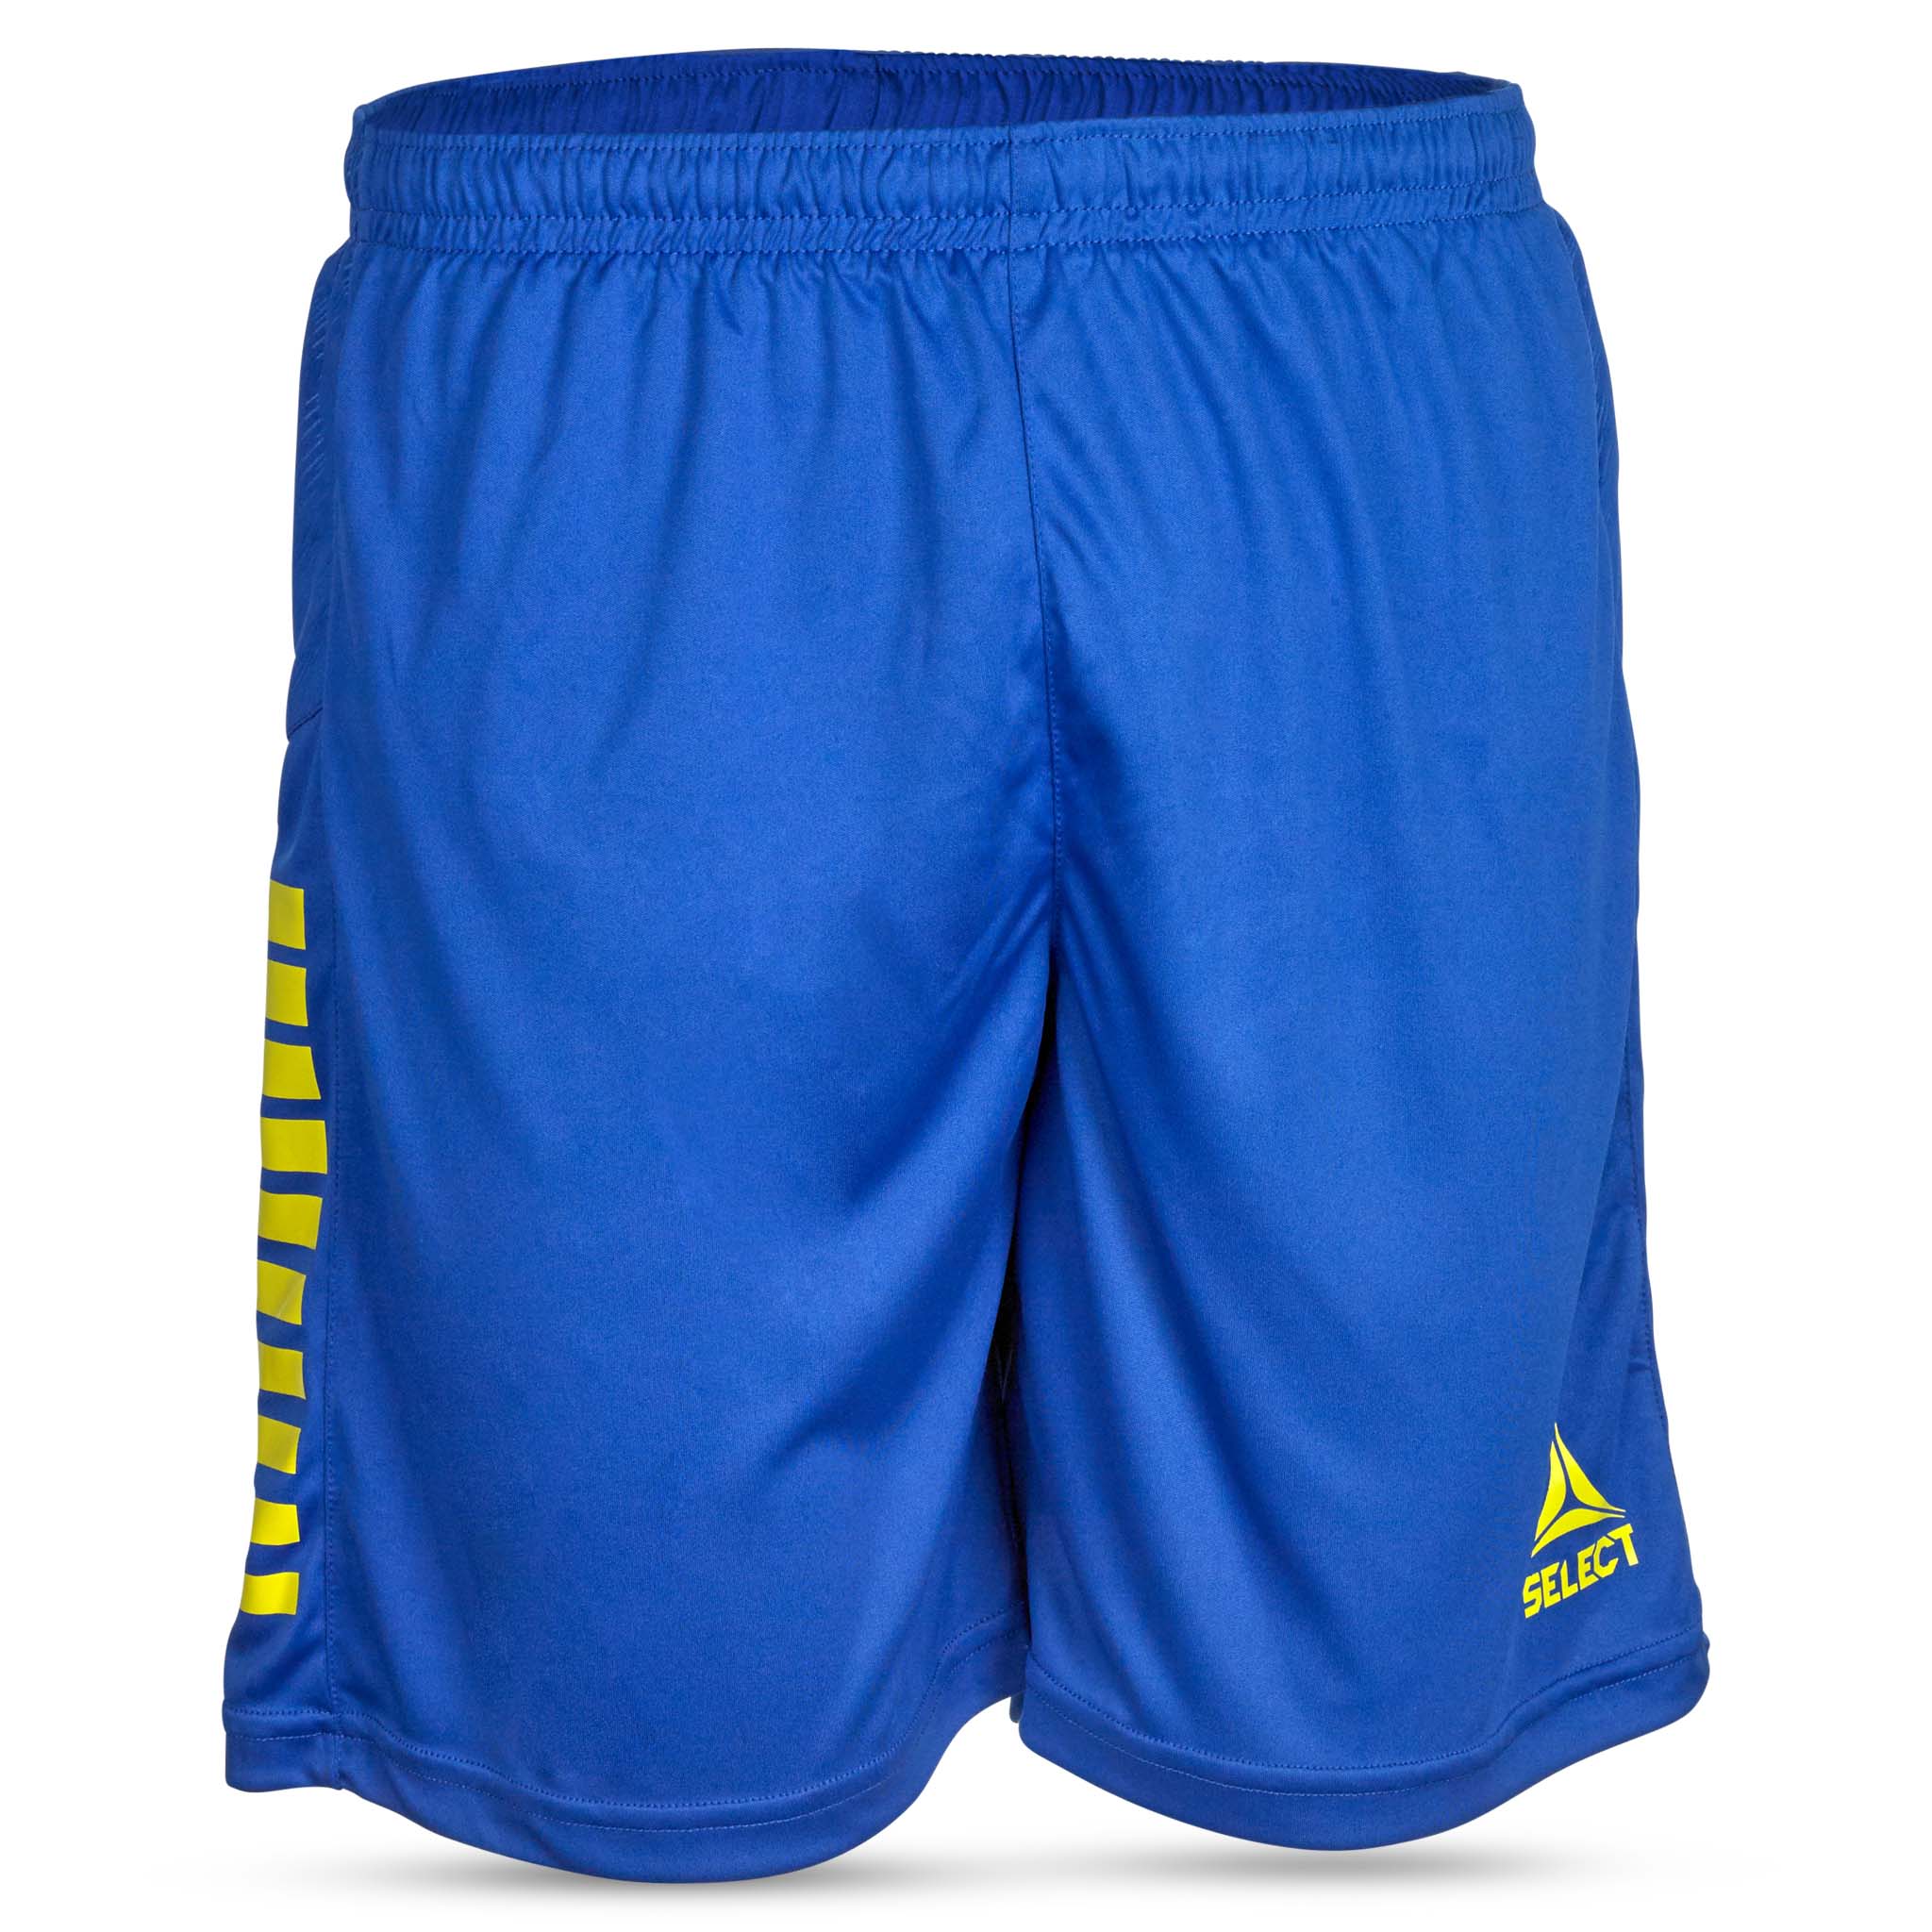 Spain Shorts #färg_blå/gul